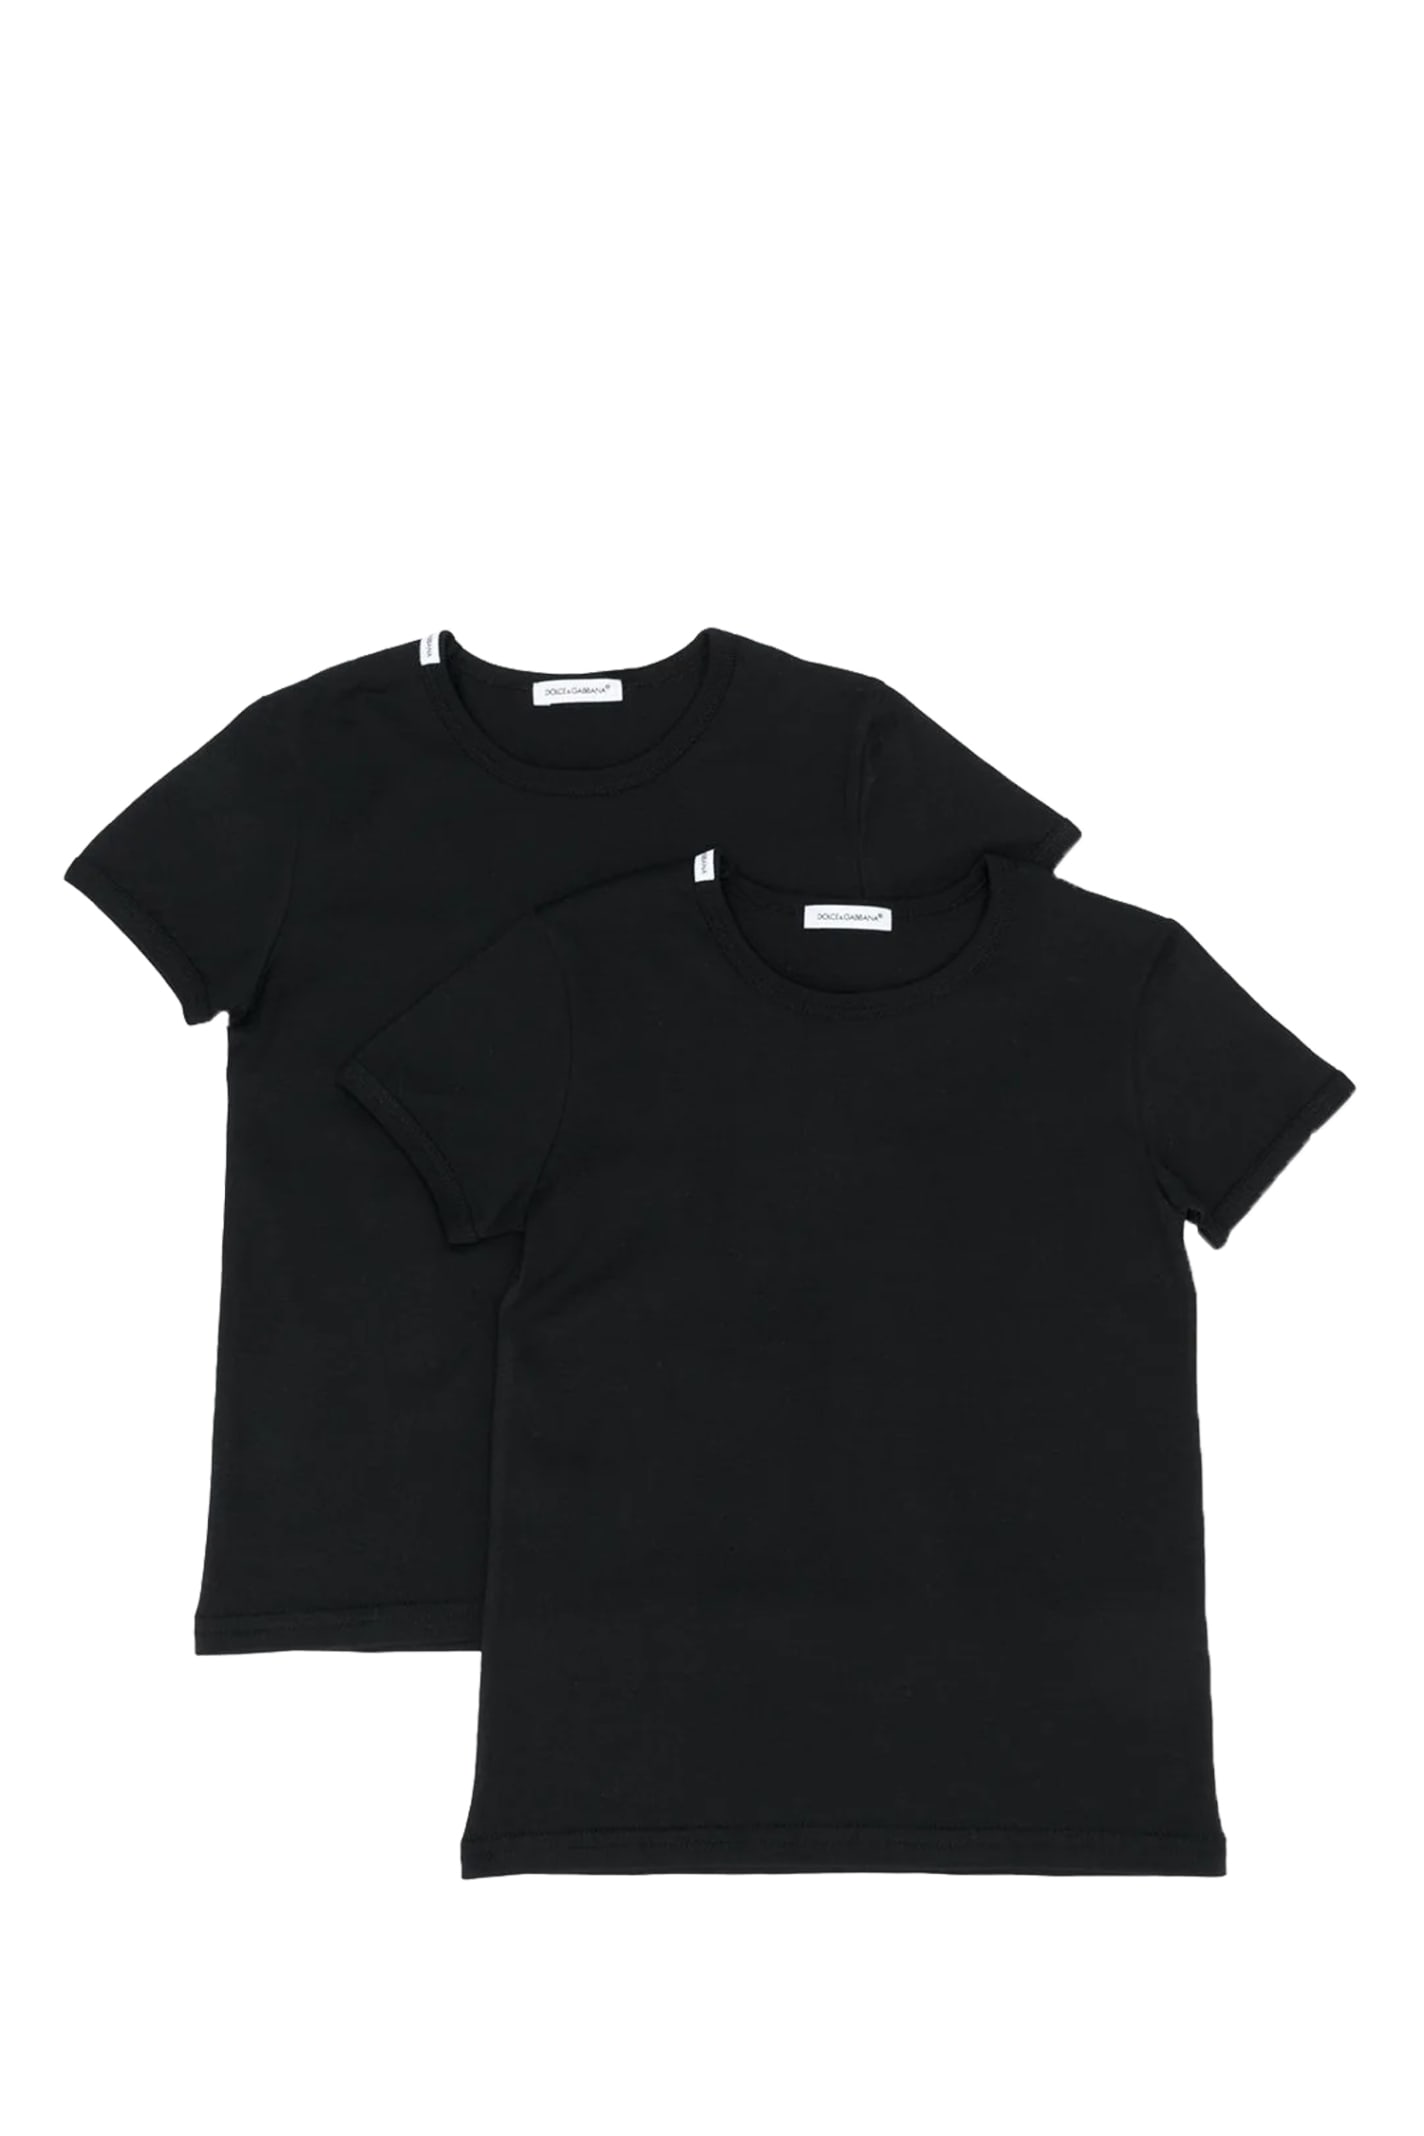 Dolce & Gabbana Kids' T-shirt Kit In Back